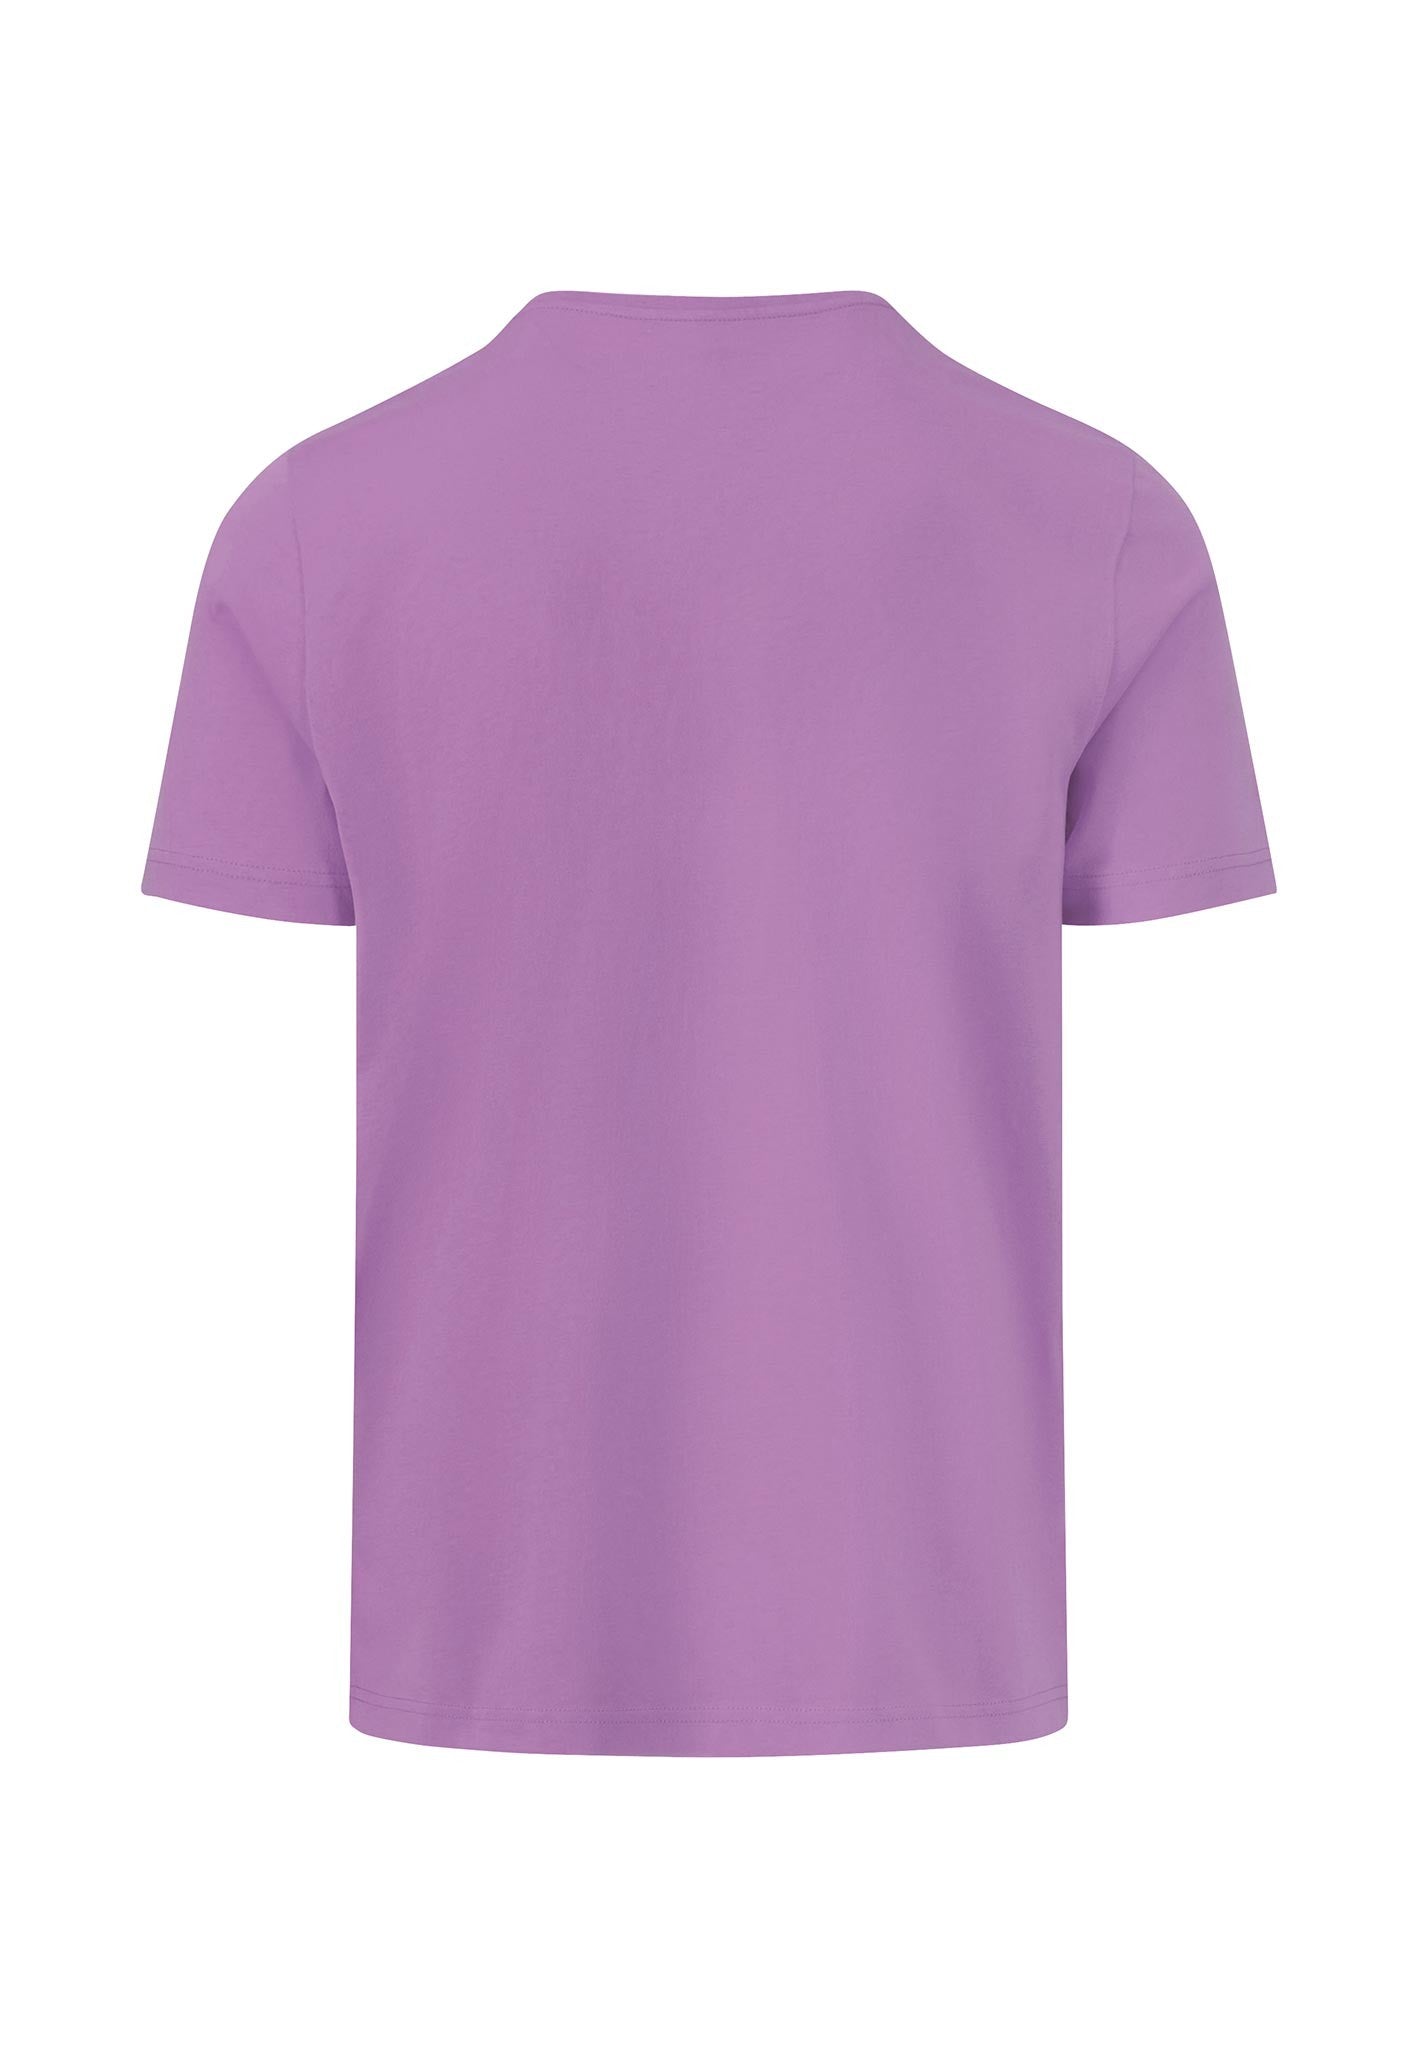 Fynch Hatton Superfine Cotton T-Shirt Lavender